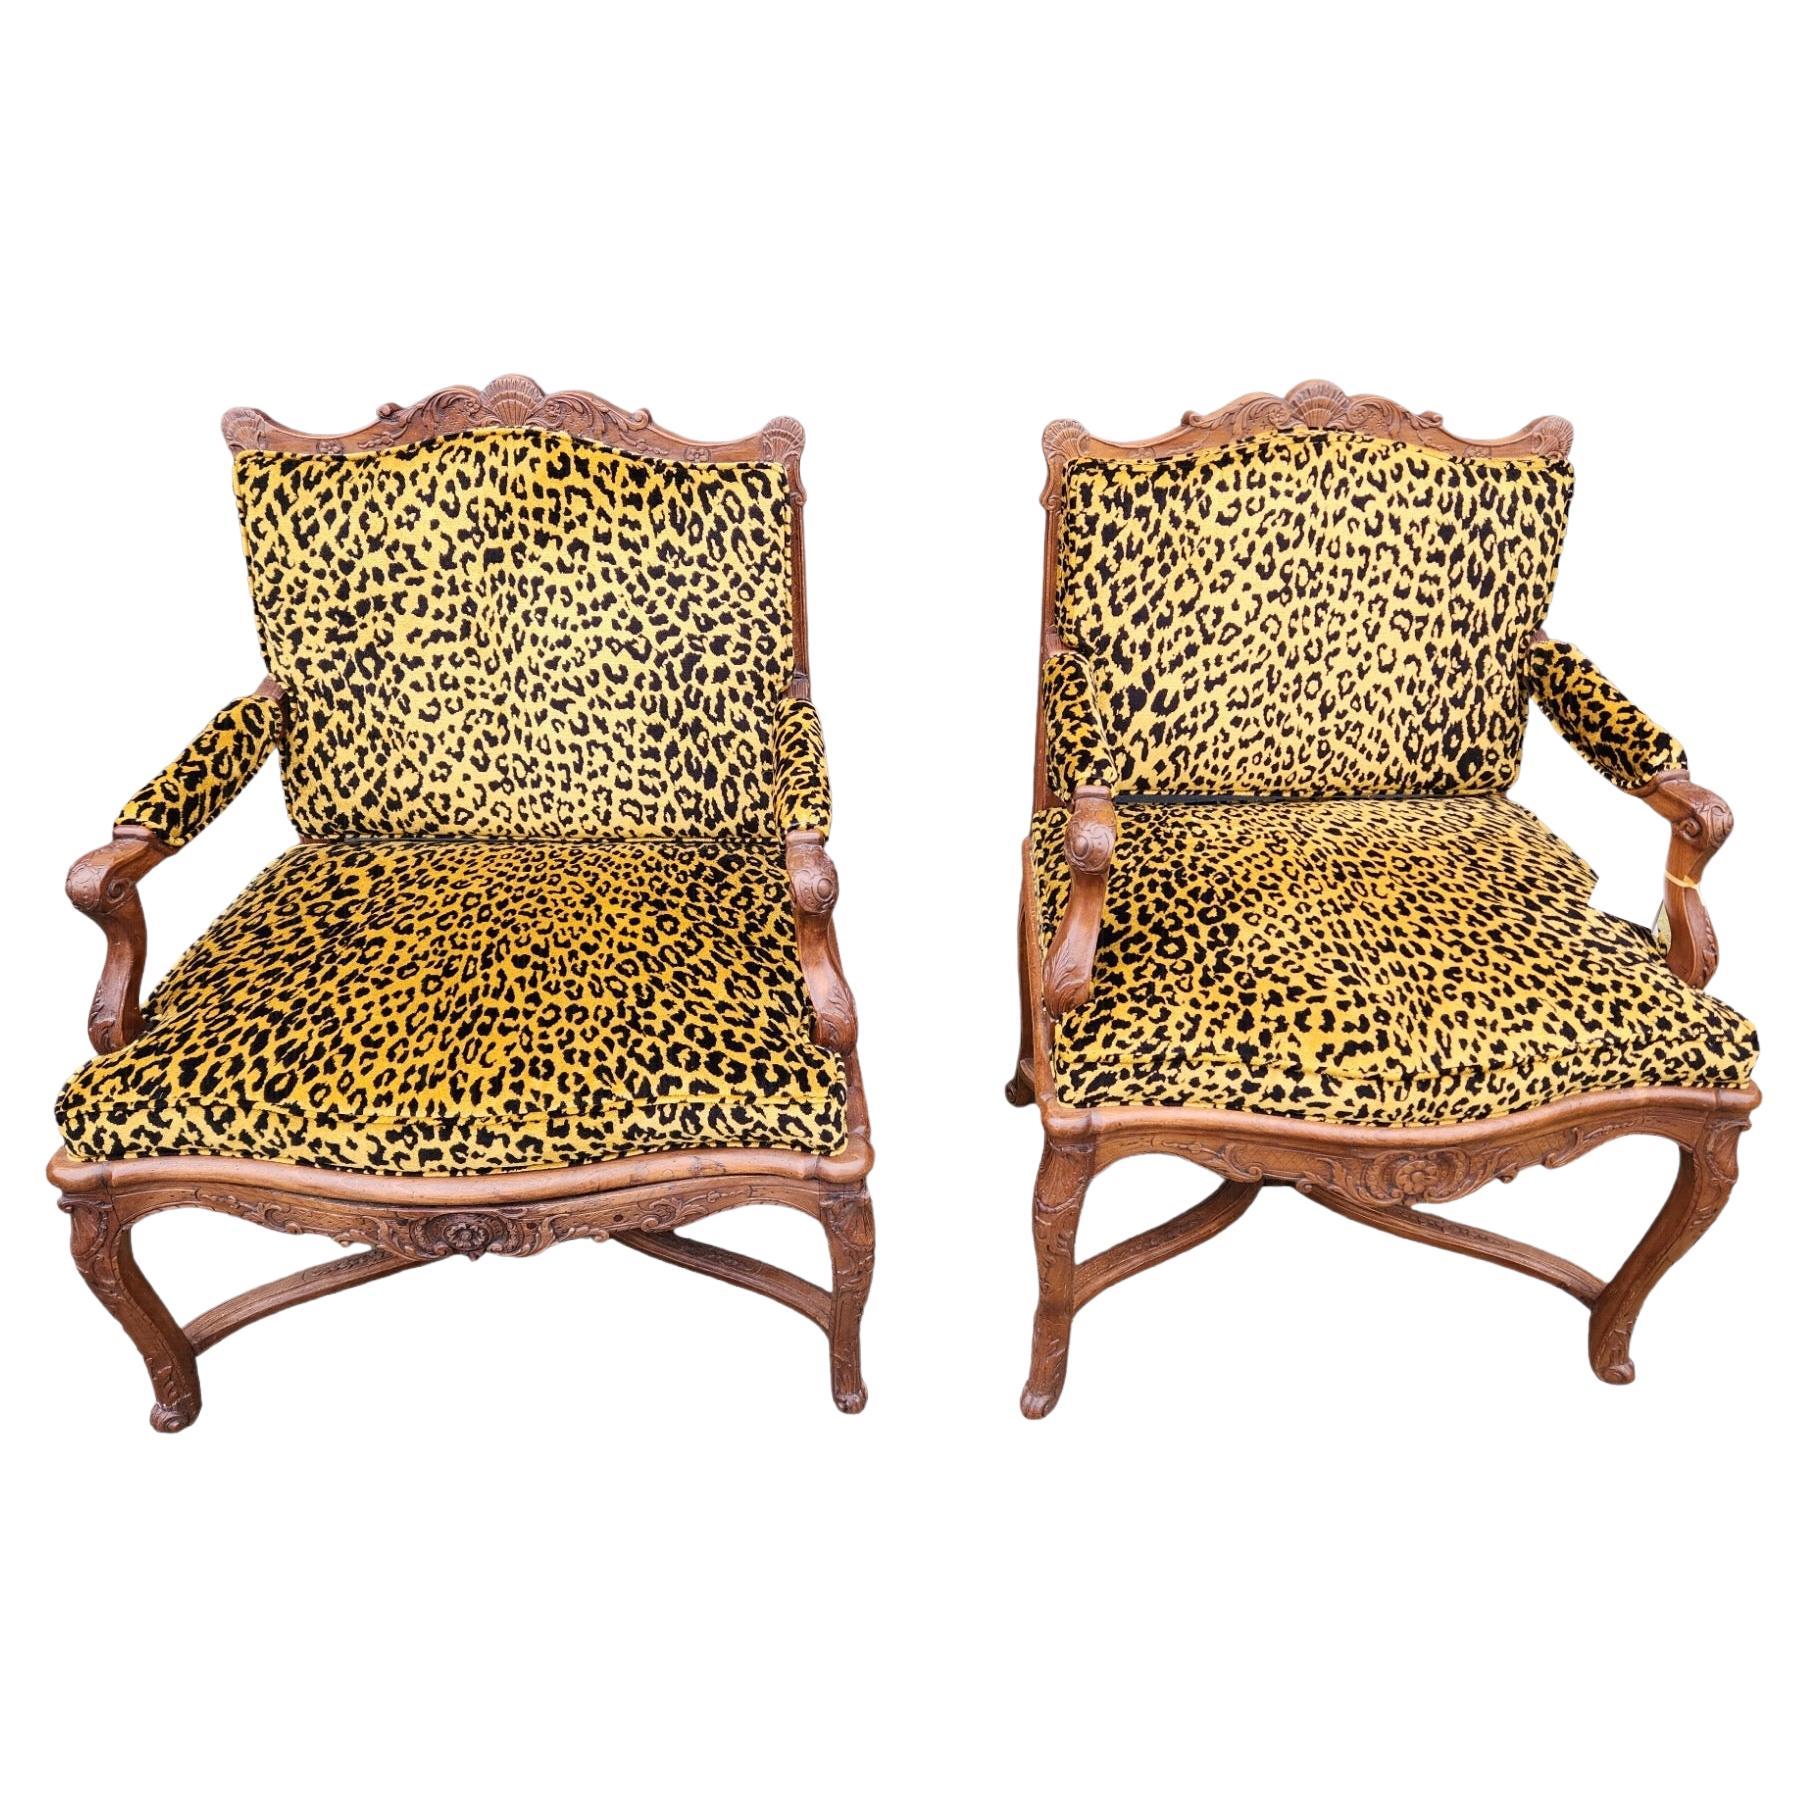 Ähnliches Paar französischer Regence-Sessel aus Nussbaumholz